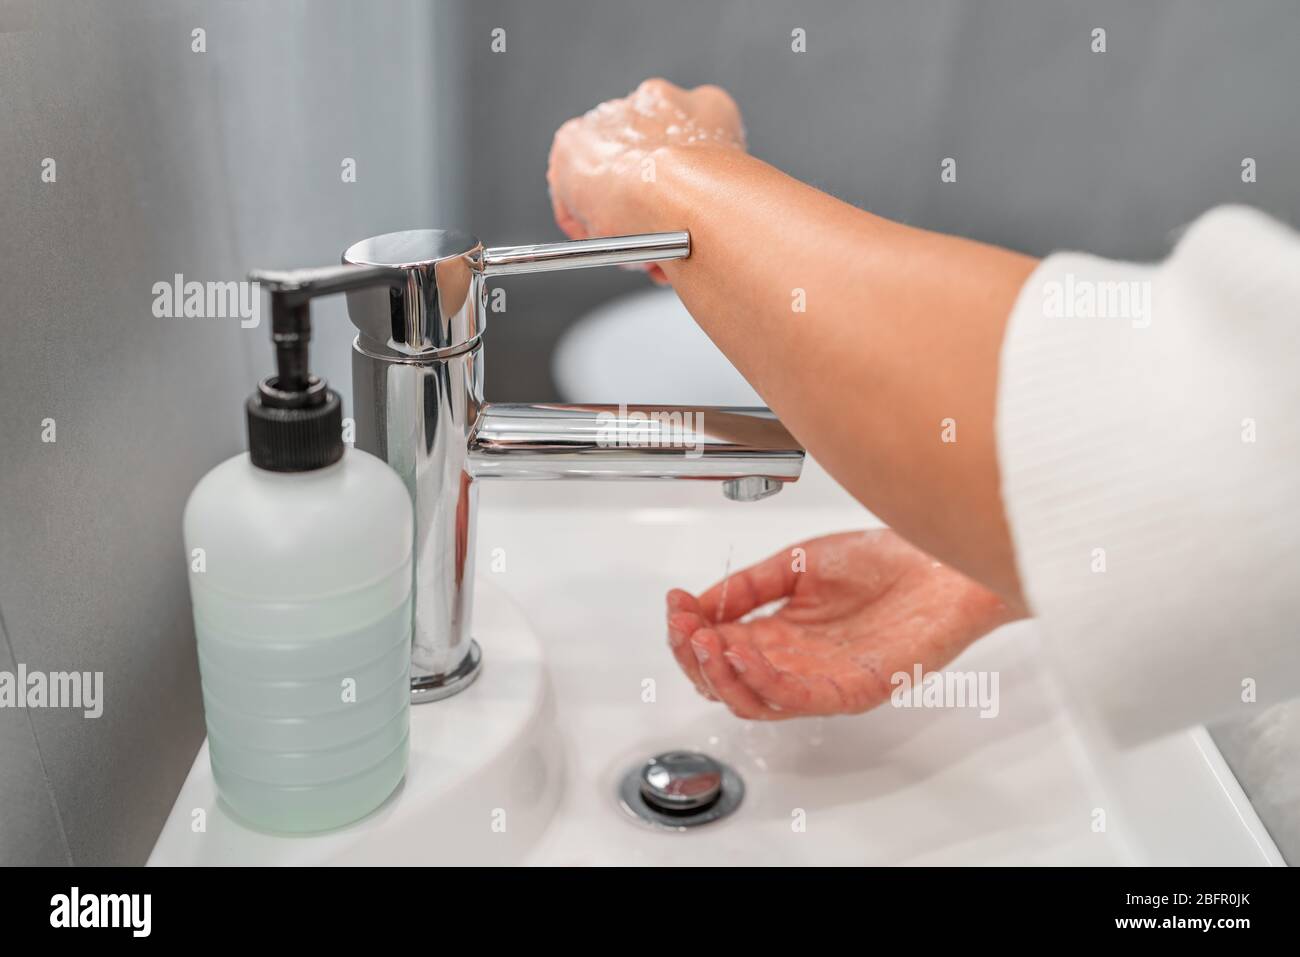 Lavage des mains hygiène étape fermeture robinet robinet avec bras au lieu de la main après séchage des mains pour la prévention de la contamination COVID-19. Précaution dans la salle de bains. Banque D'Images